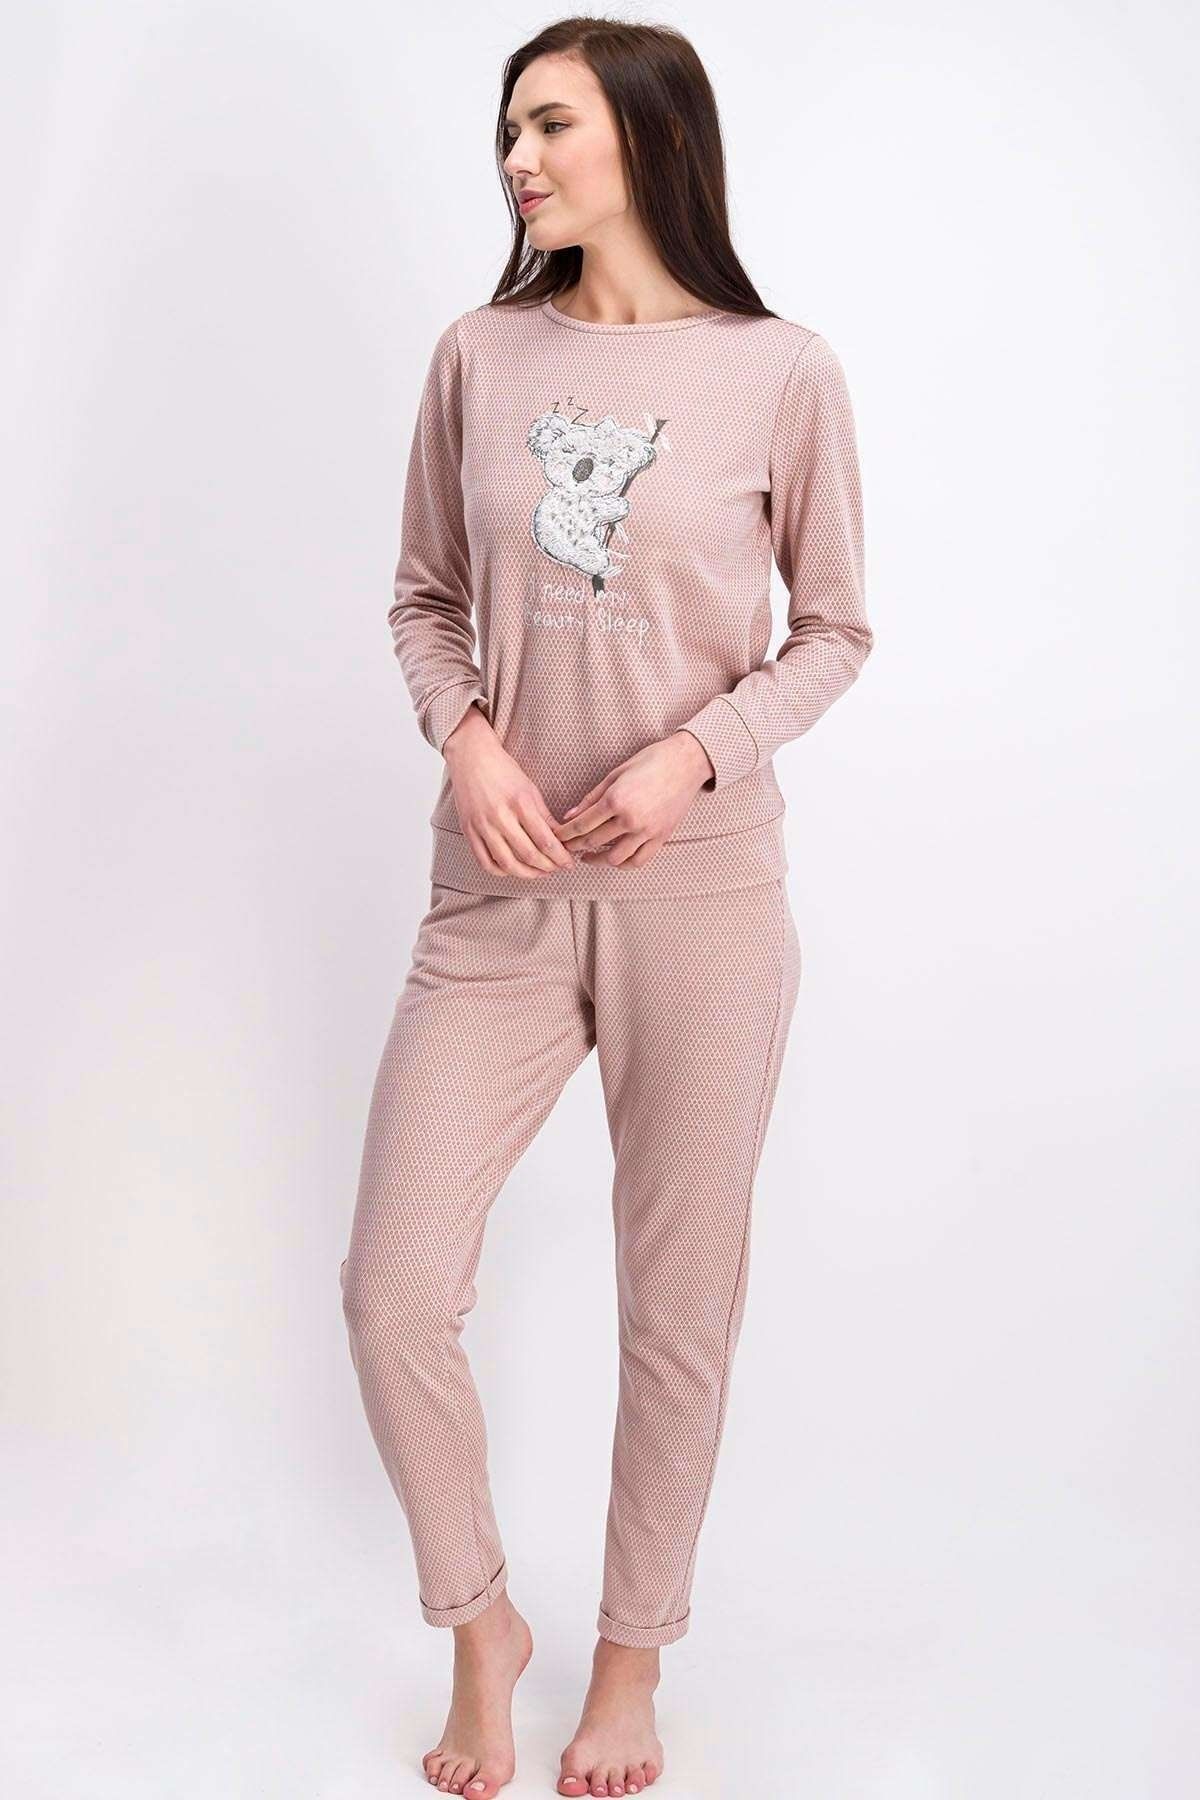 Arnetta Ar1049-s Koala Kadın Pijama Takımı